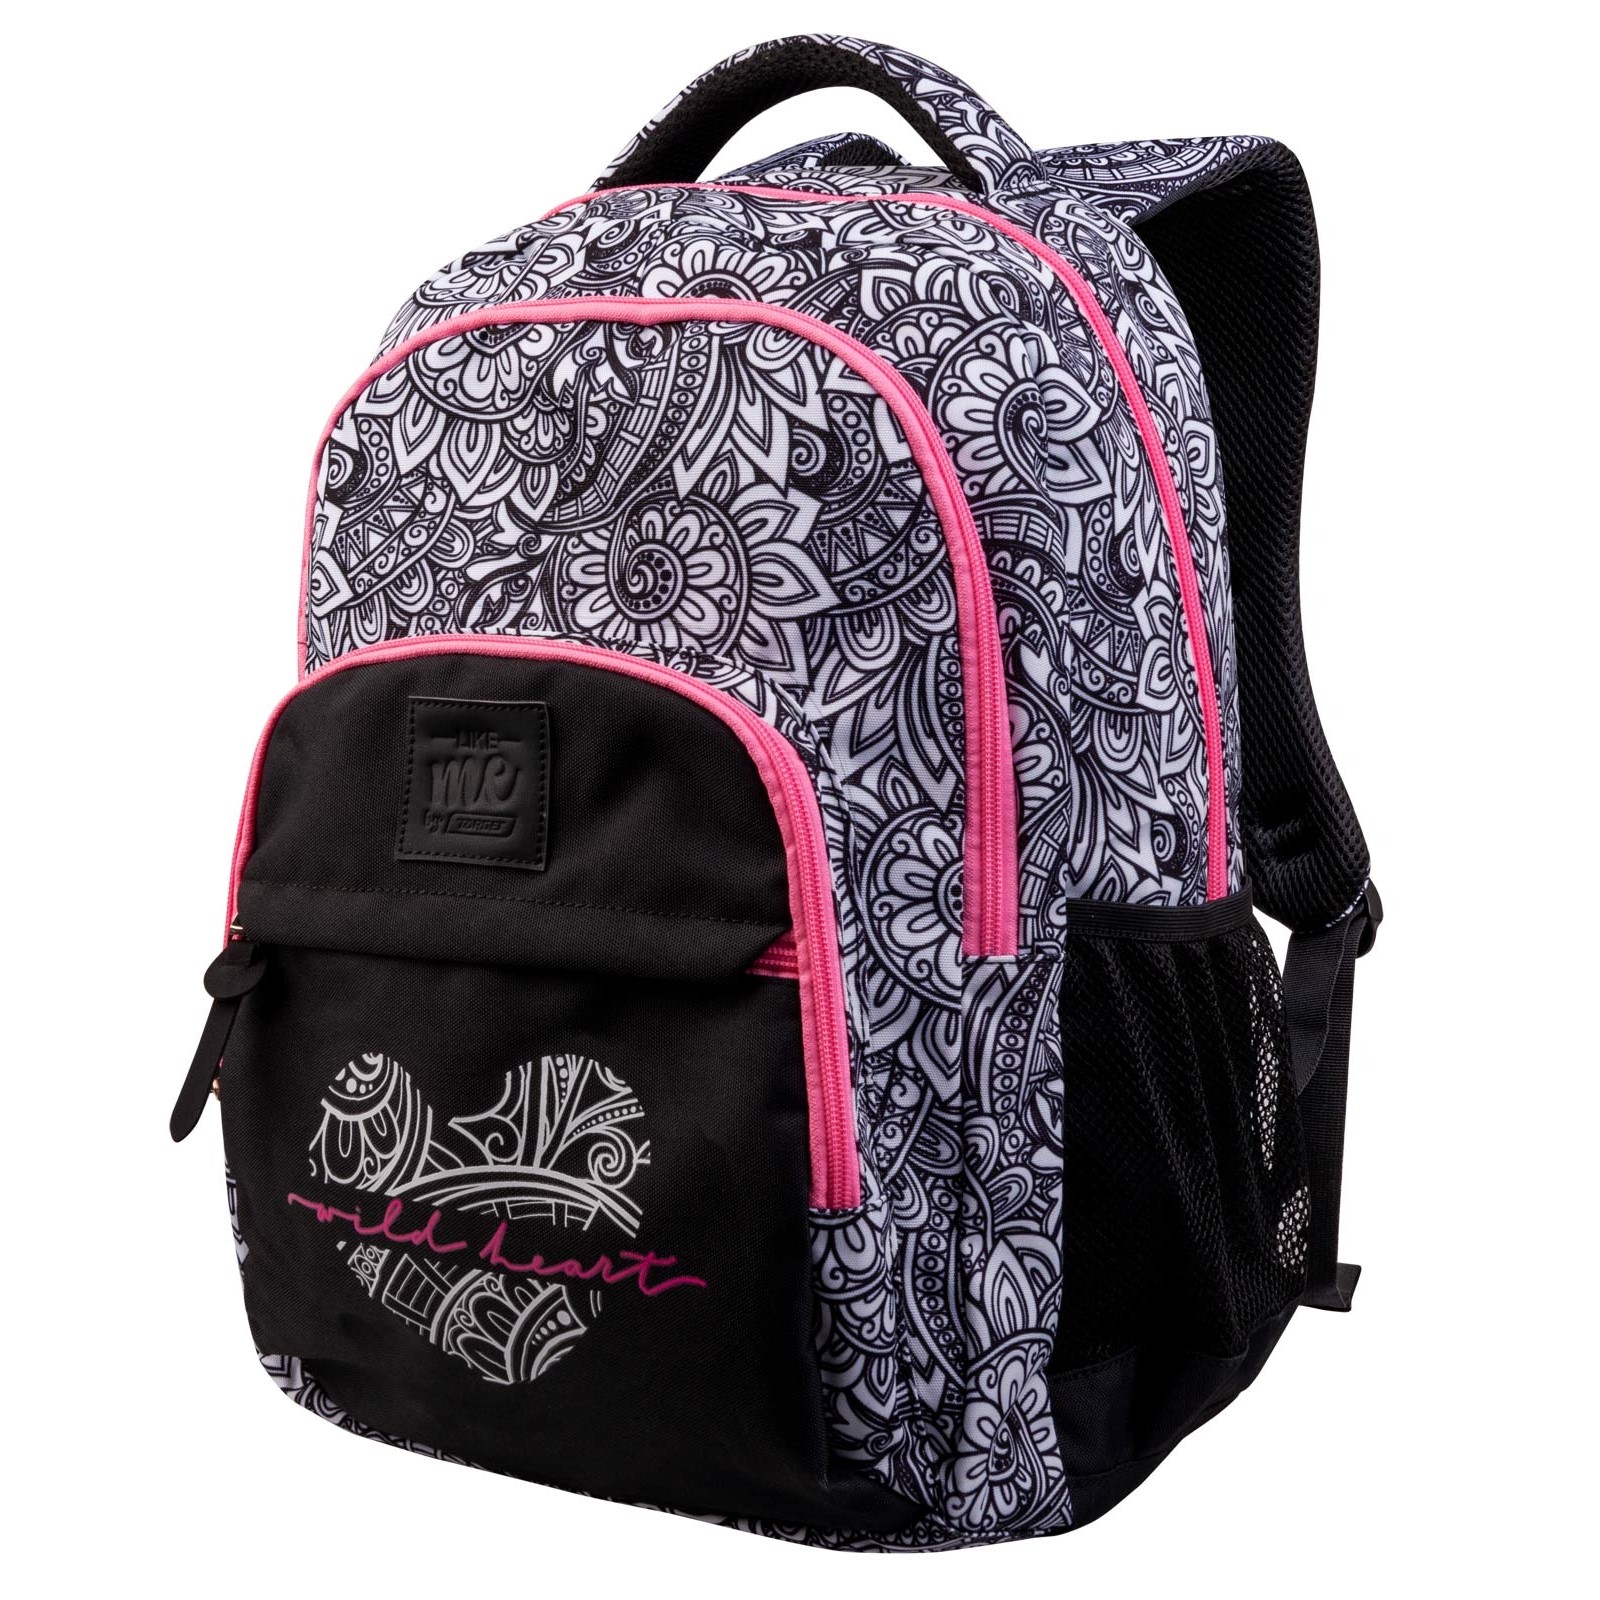 Target Solid Black Backpack One Size - 36% off | ThredUp